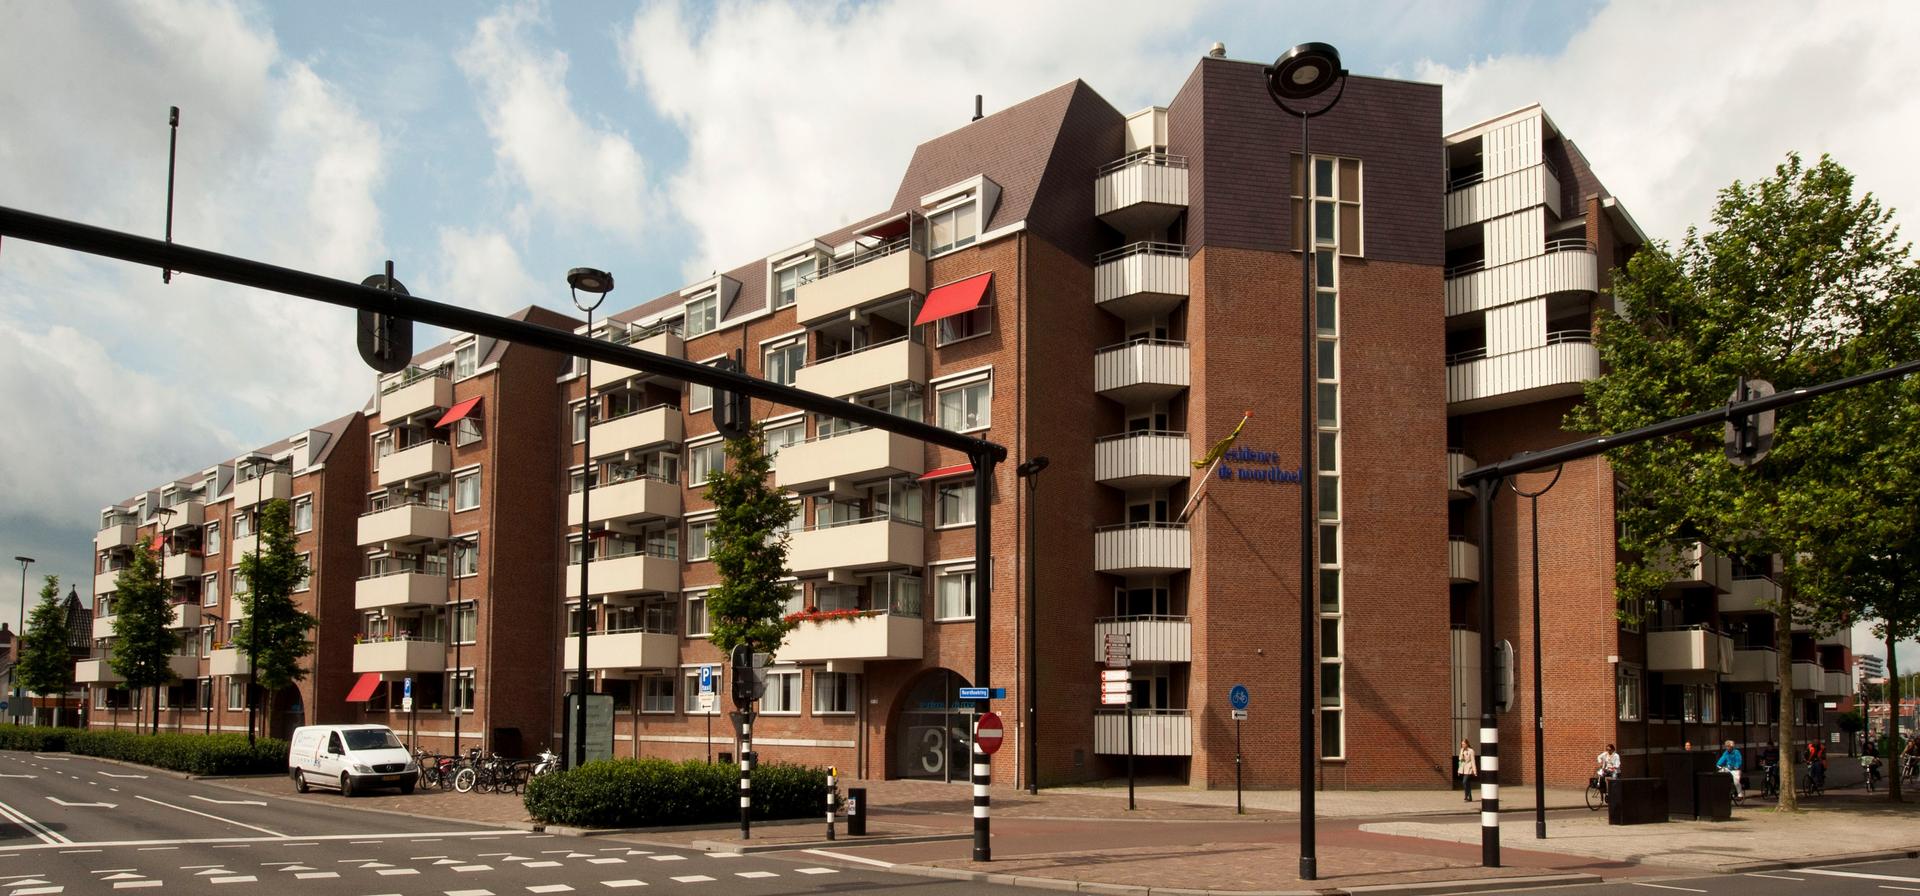 Residence De Noordhoek - Tilburg (4)